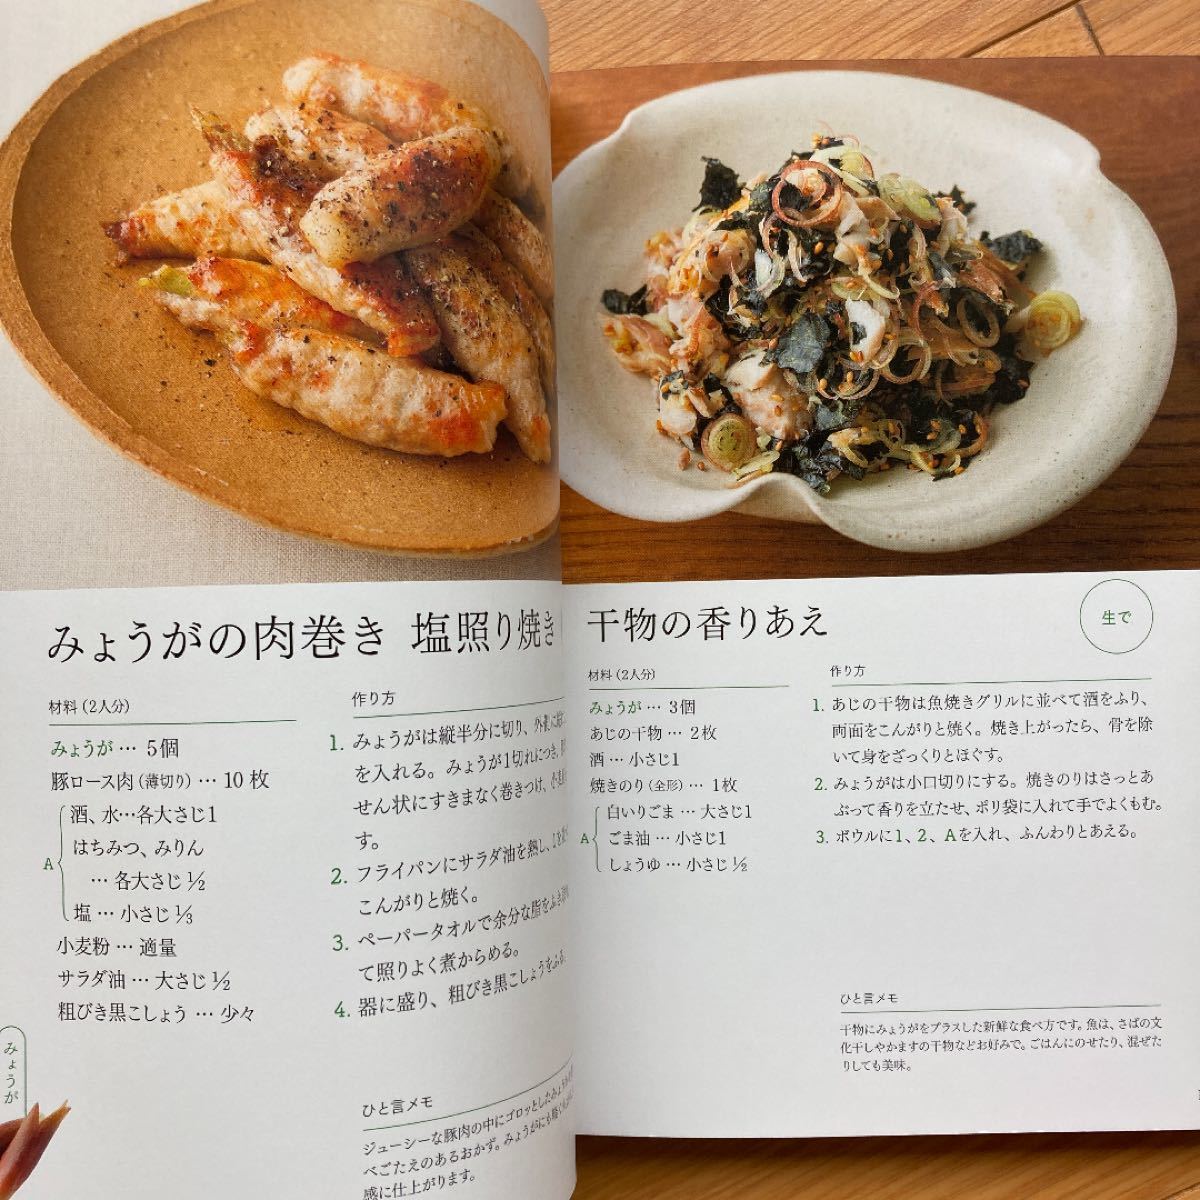 藤井恵 私の好きな薬味たっぷりレシピ & 体にいいごはん献立 2冊セット